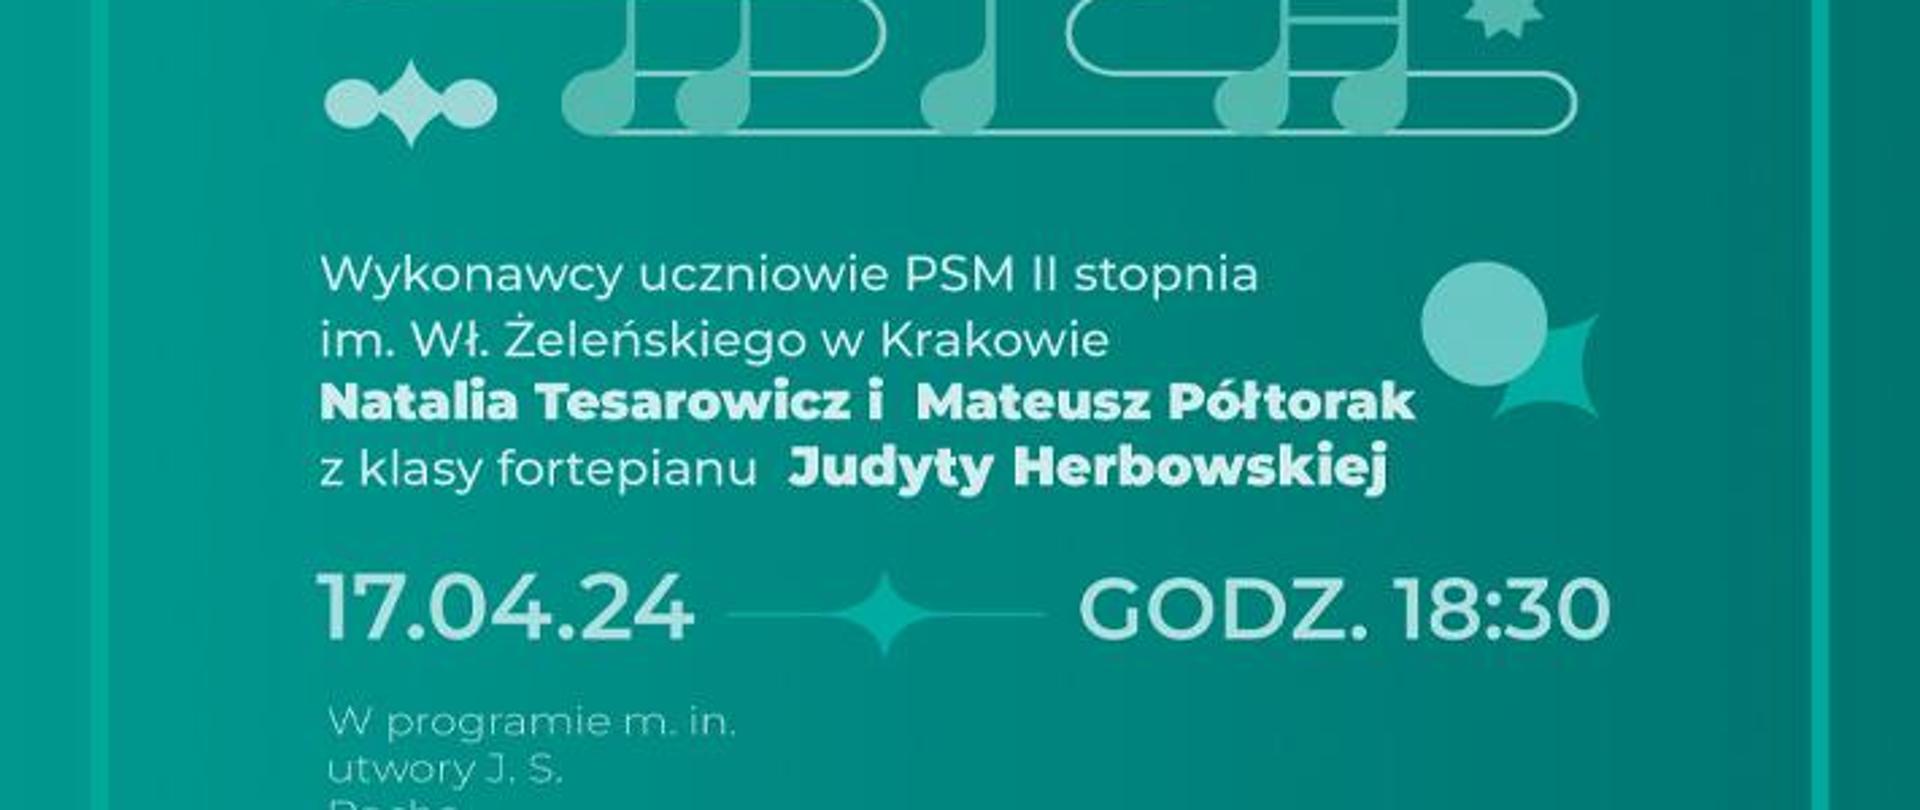 na zielonym tle w ramce z logotypem miasta Kraków na górze napis "Music +" i muzyczne symbole, poniżej informacje o wykonawcach, dacie i programie wydarzenia